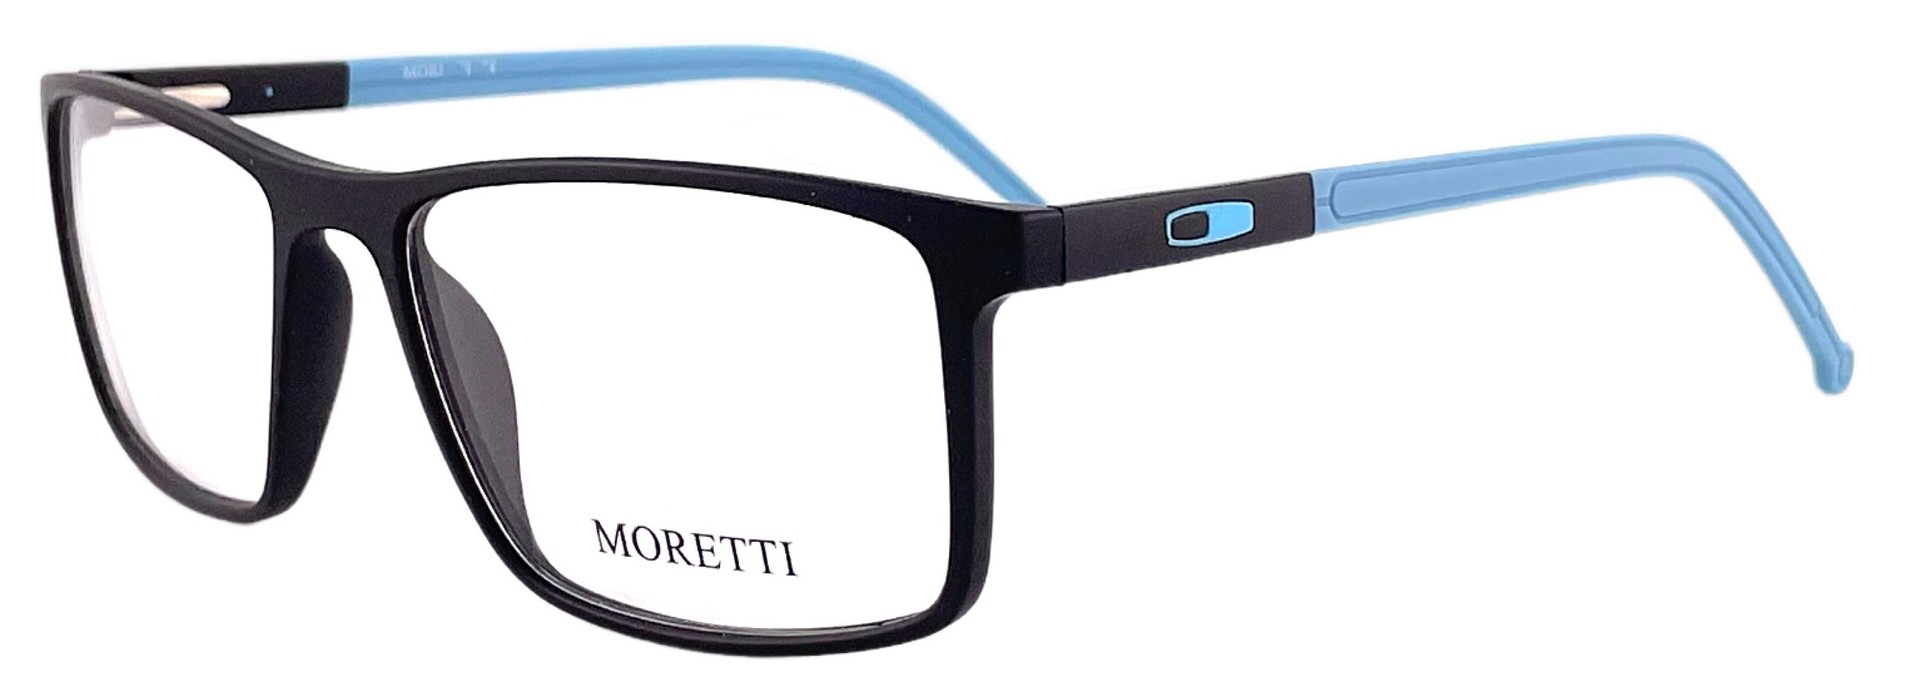 Moretti FB02-11 C.01F 2